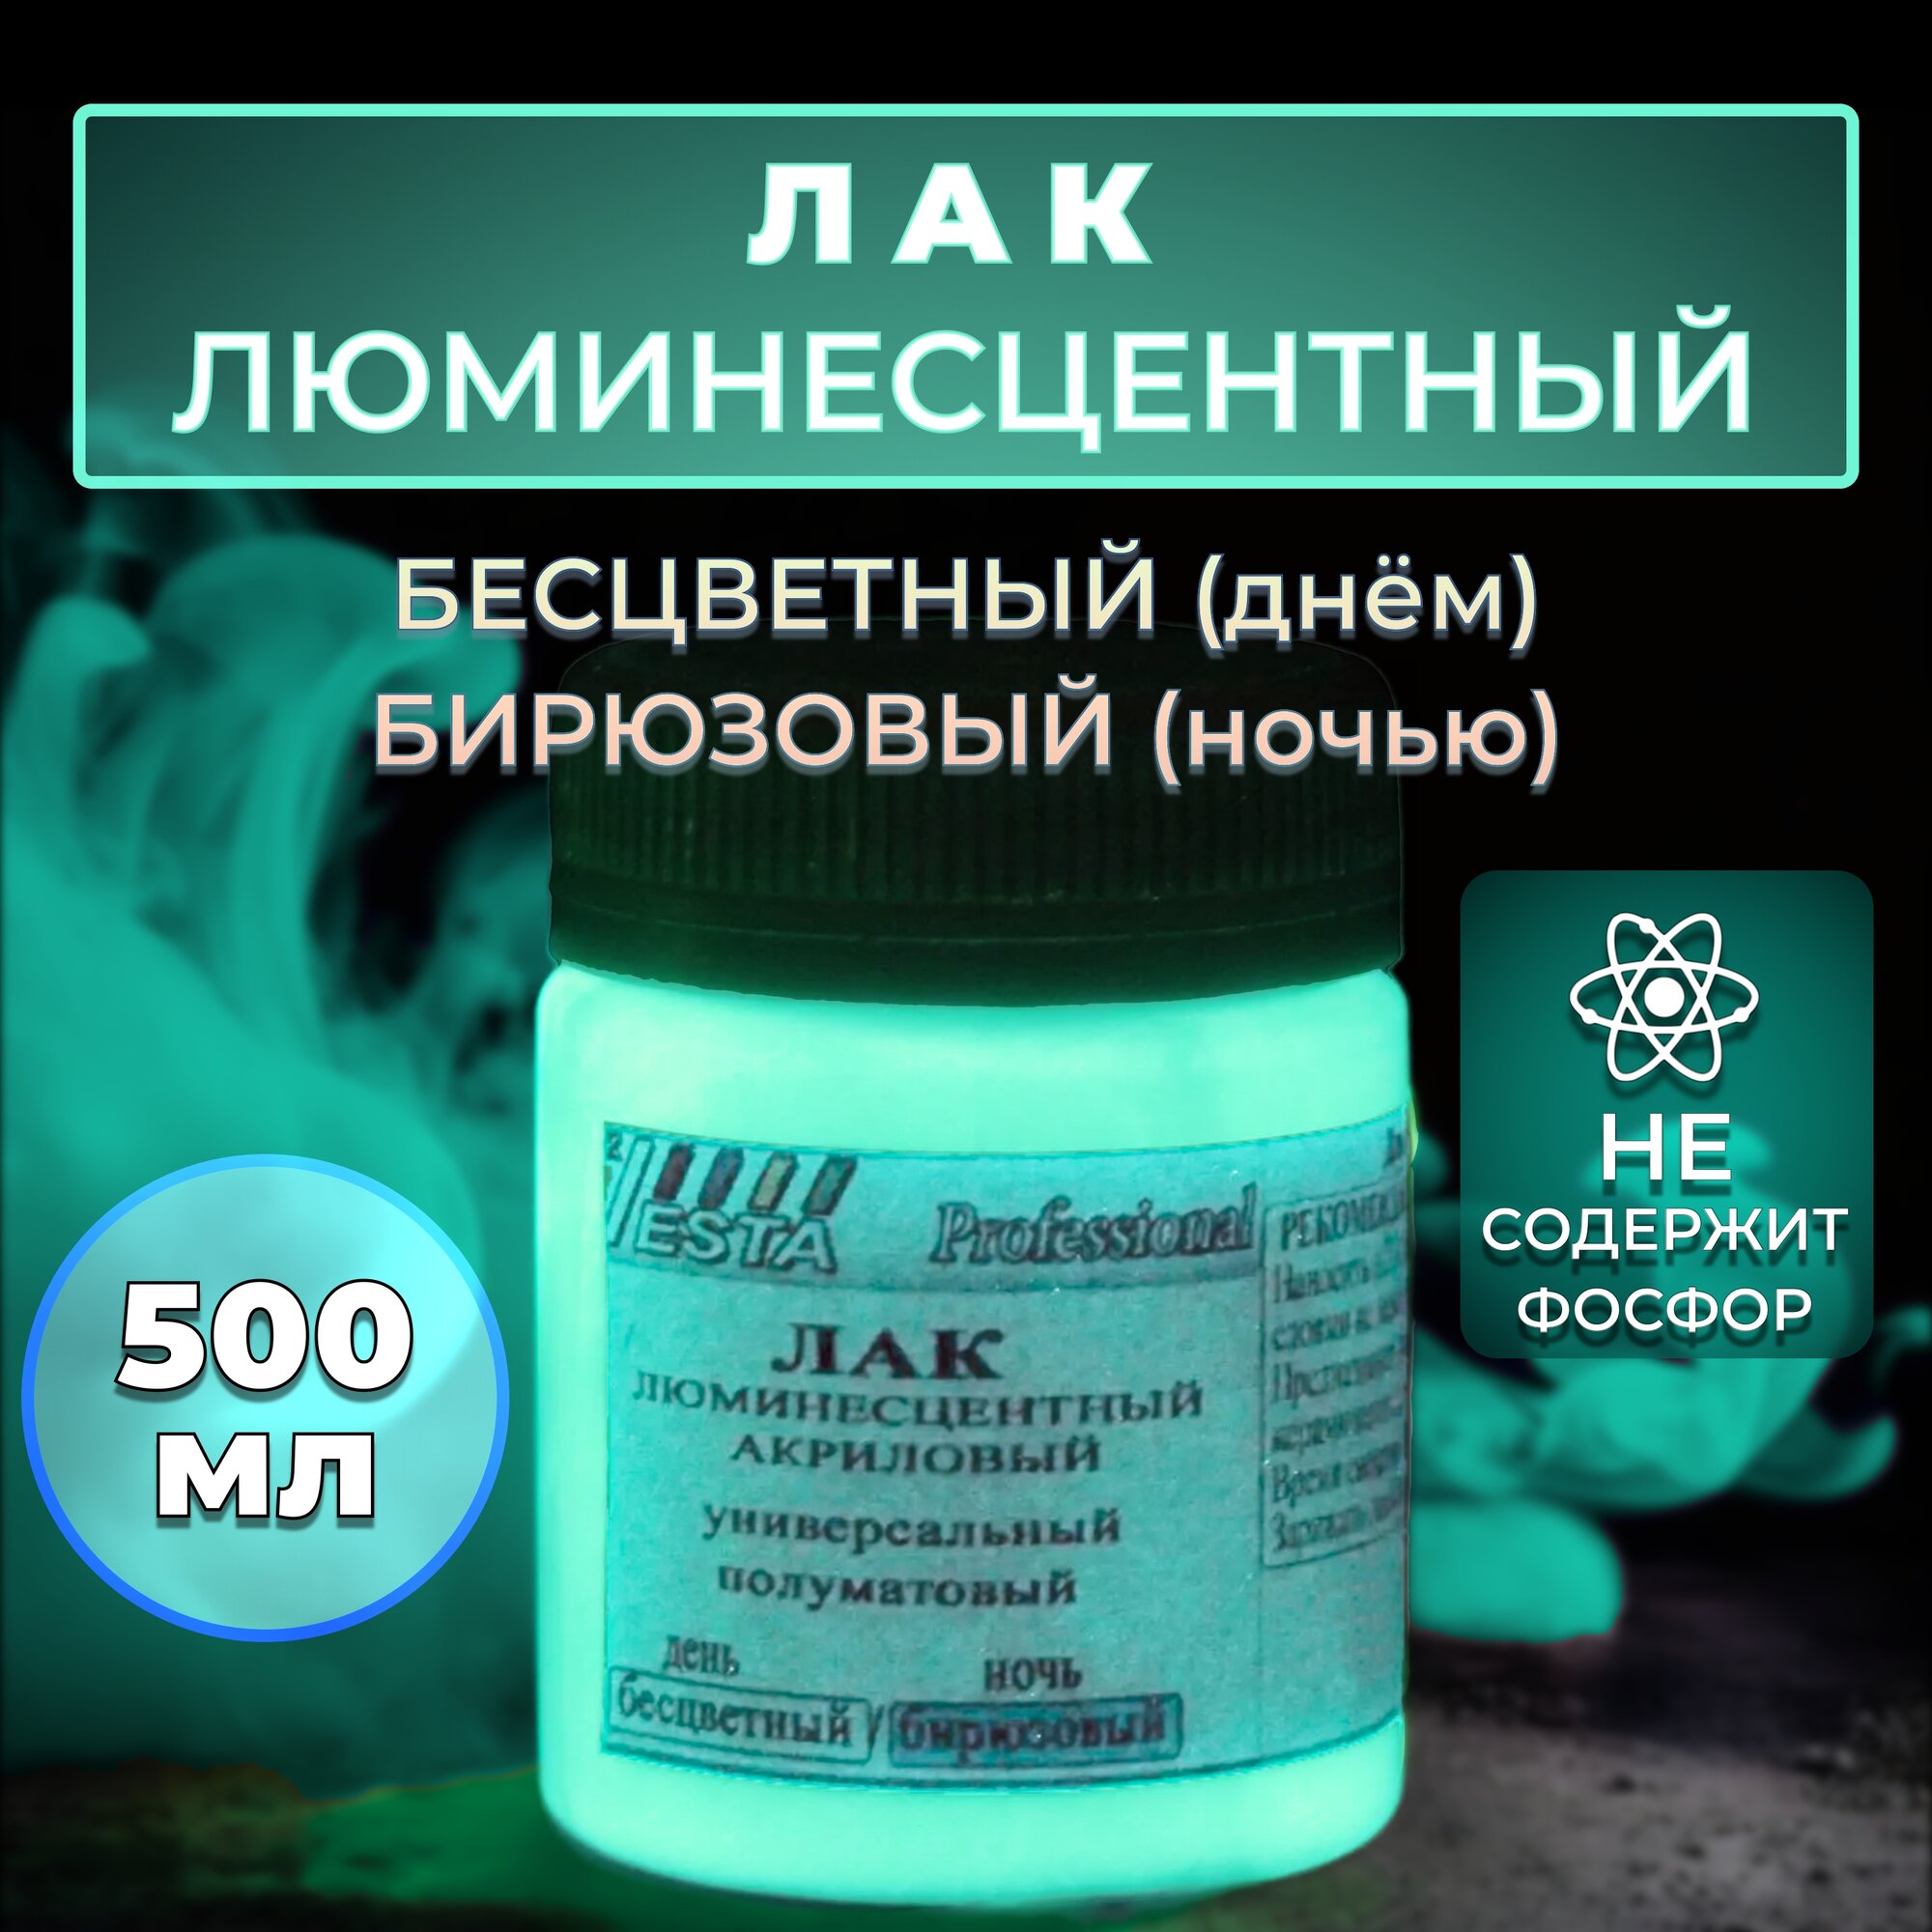 Лак люминесцентный "VESTA PROFESSIONAL" бесцветный / бирюзовый (день / ночь) - 500 мл